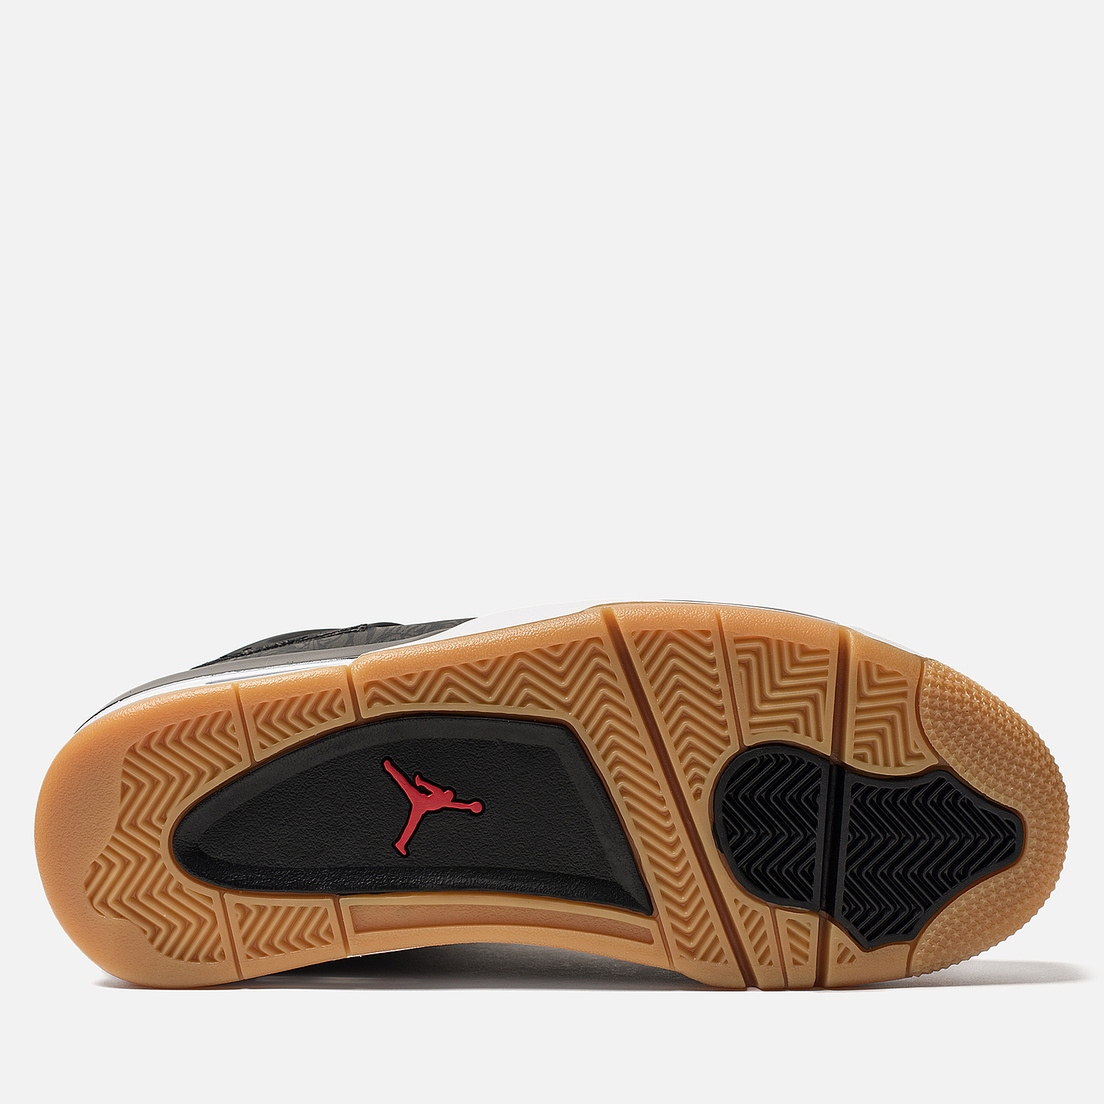 Jordan Мужские кроссовки Air Jordan 4 Retro SE